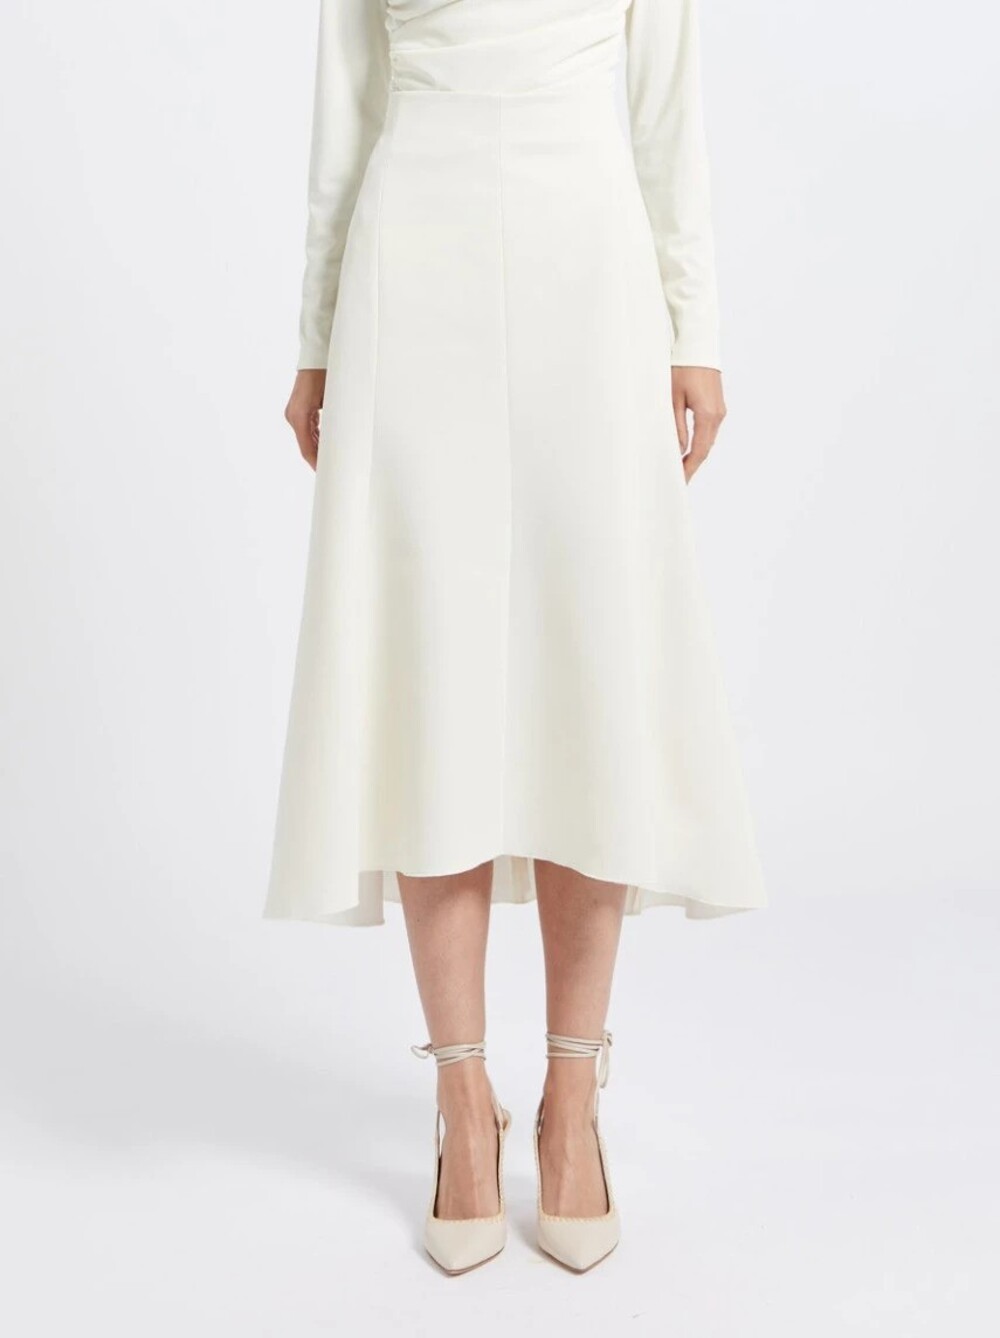 suknja 8 Bele suknje: WNB stilisti izdvajaju najlepše modele sa domaćeg tržišta